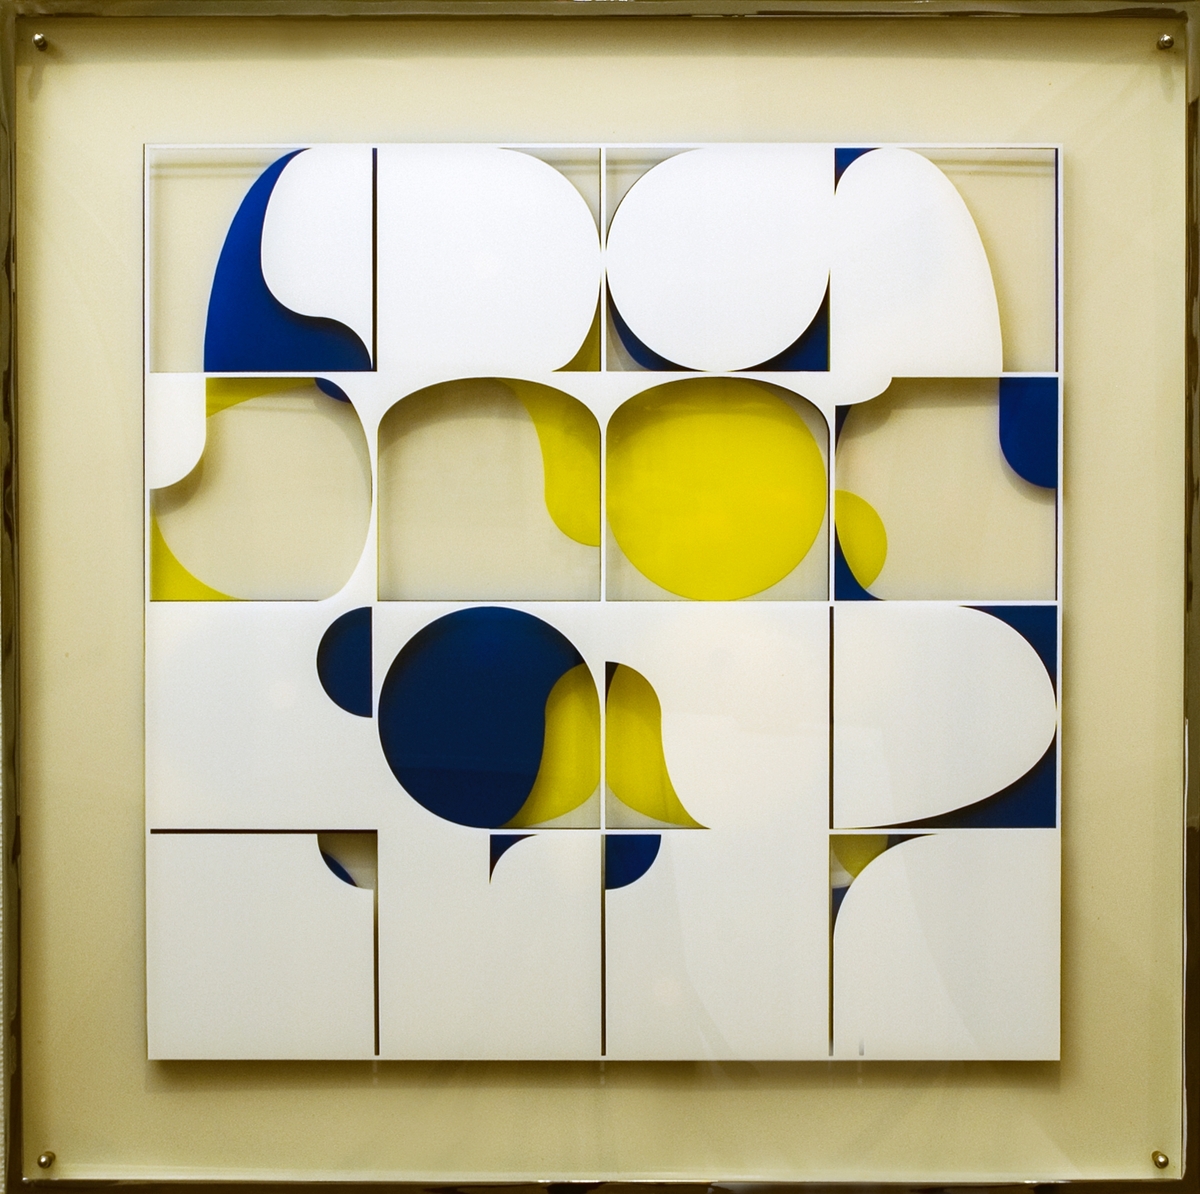 Bild, Skiktat plexiglas, av Beck & Jung, 1971.
Bilden som består av tre skikt- ett vitt, ett blått och ett gult, är gjord efter "Beck & Ljungs" s.k. bildalfabet, ett av en dator kombinerat modulsystem av ett fåtal former, utskurna ur cirkeln, kvadraten, ellipsen och romben.